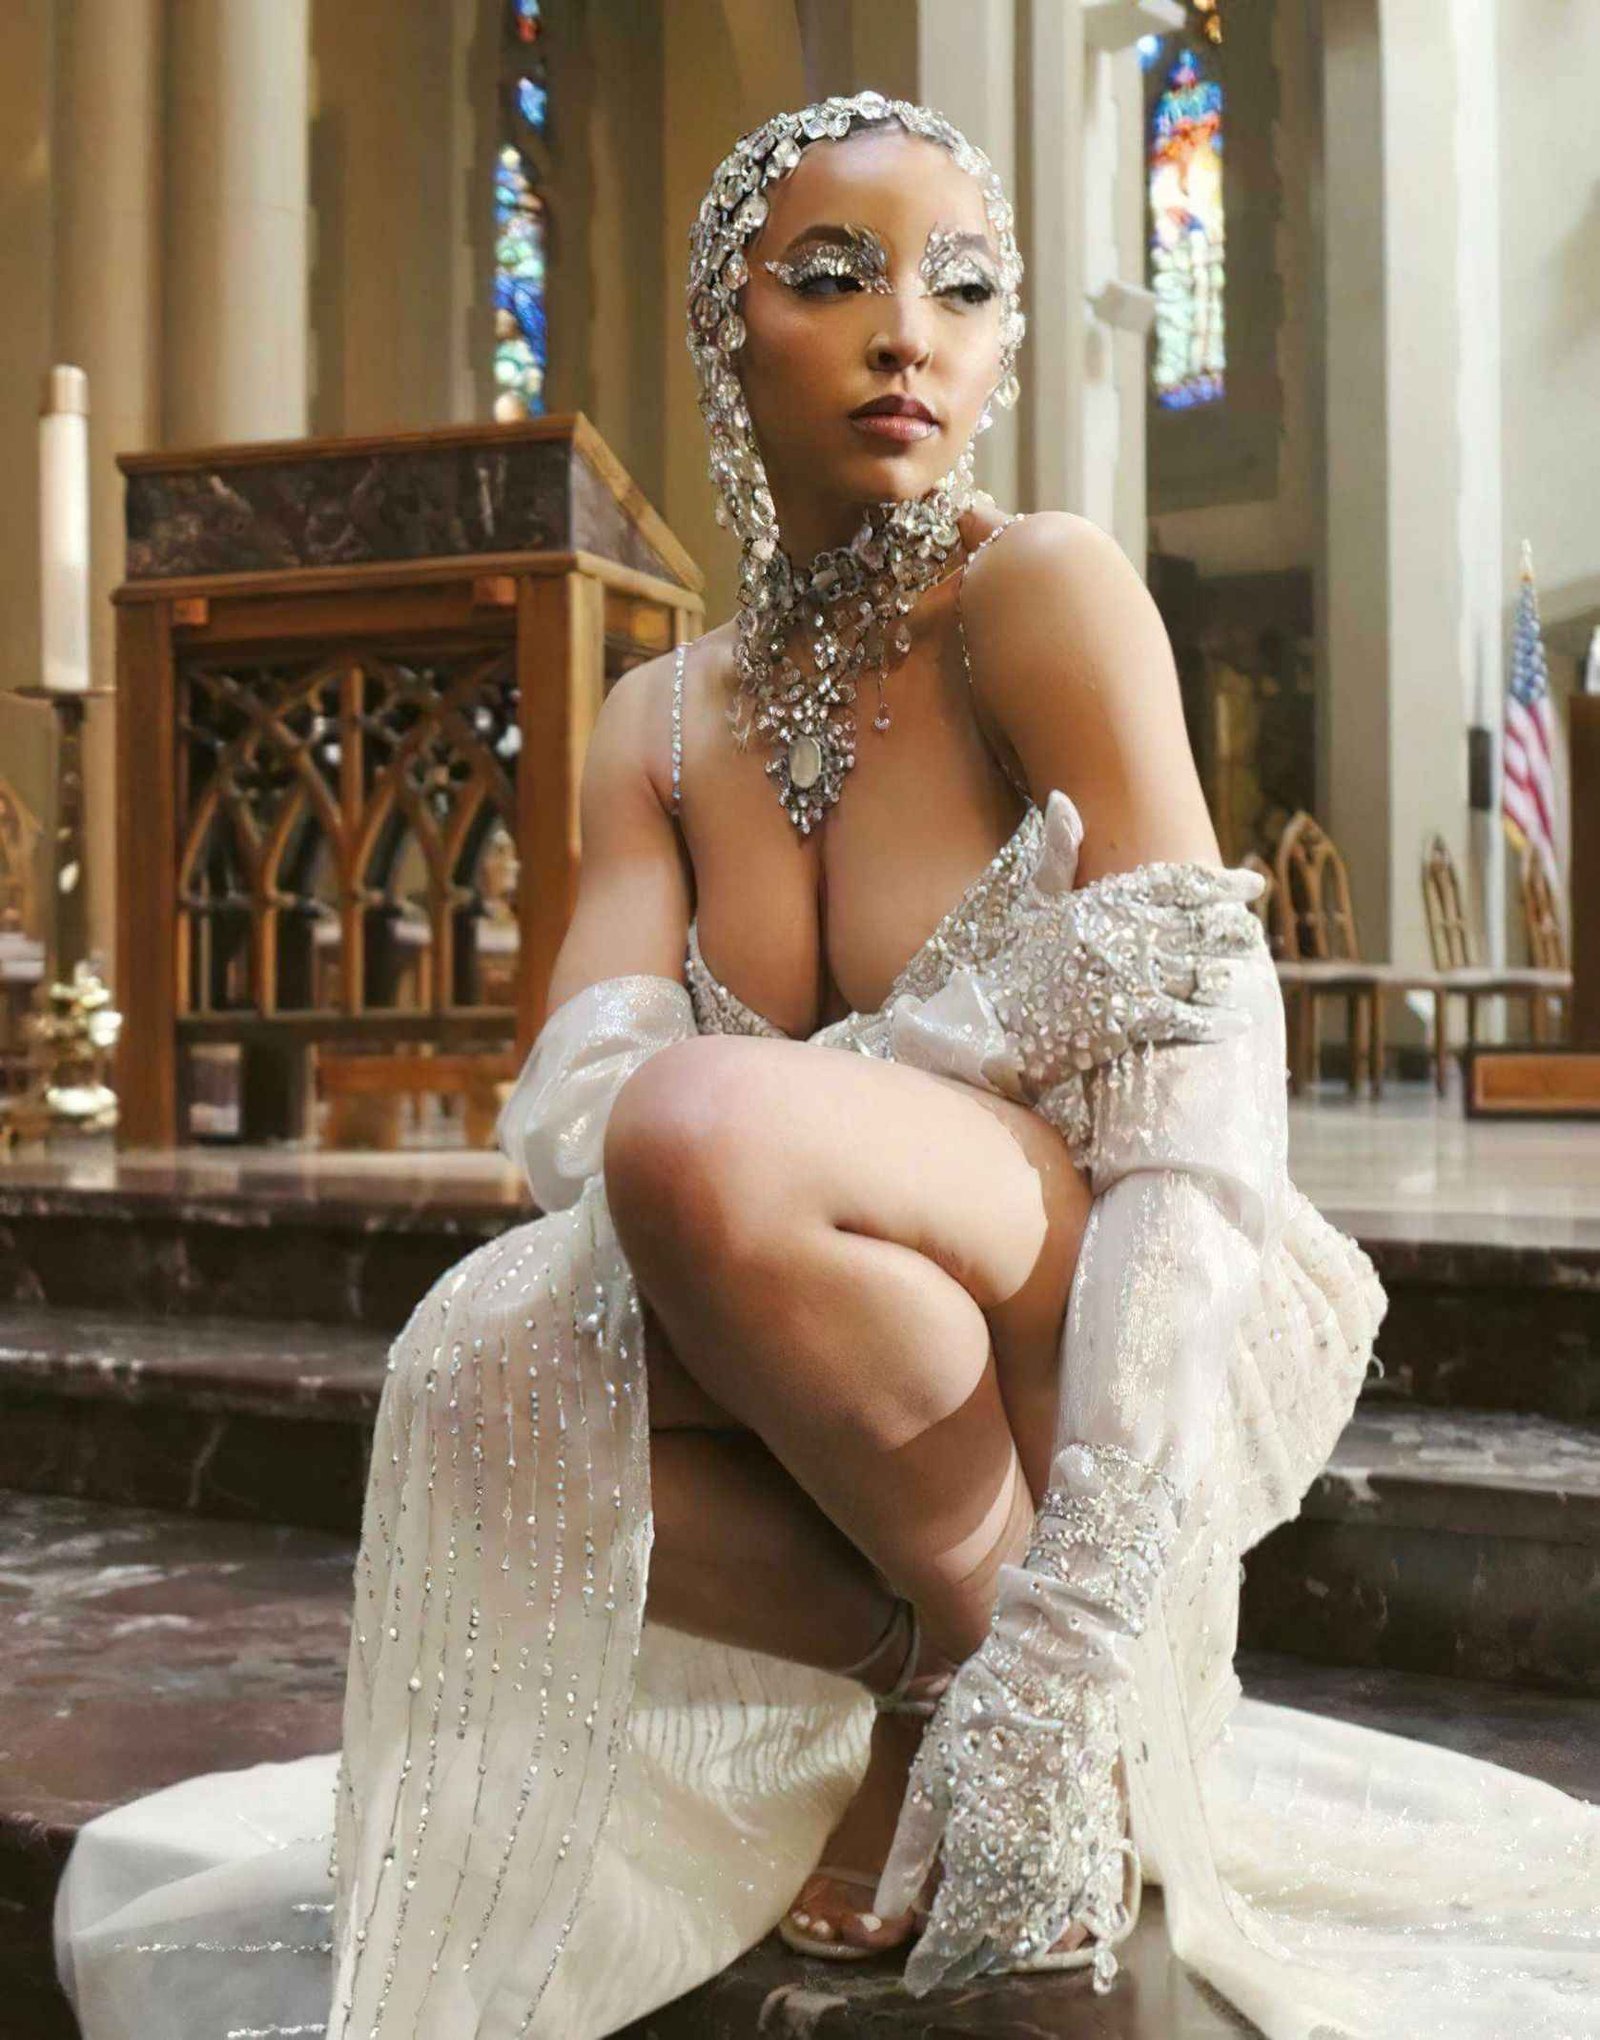 Tinashe ouvre son décolleté dans une église